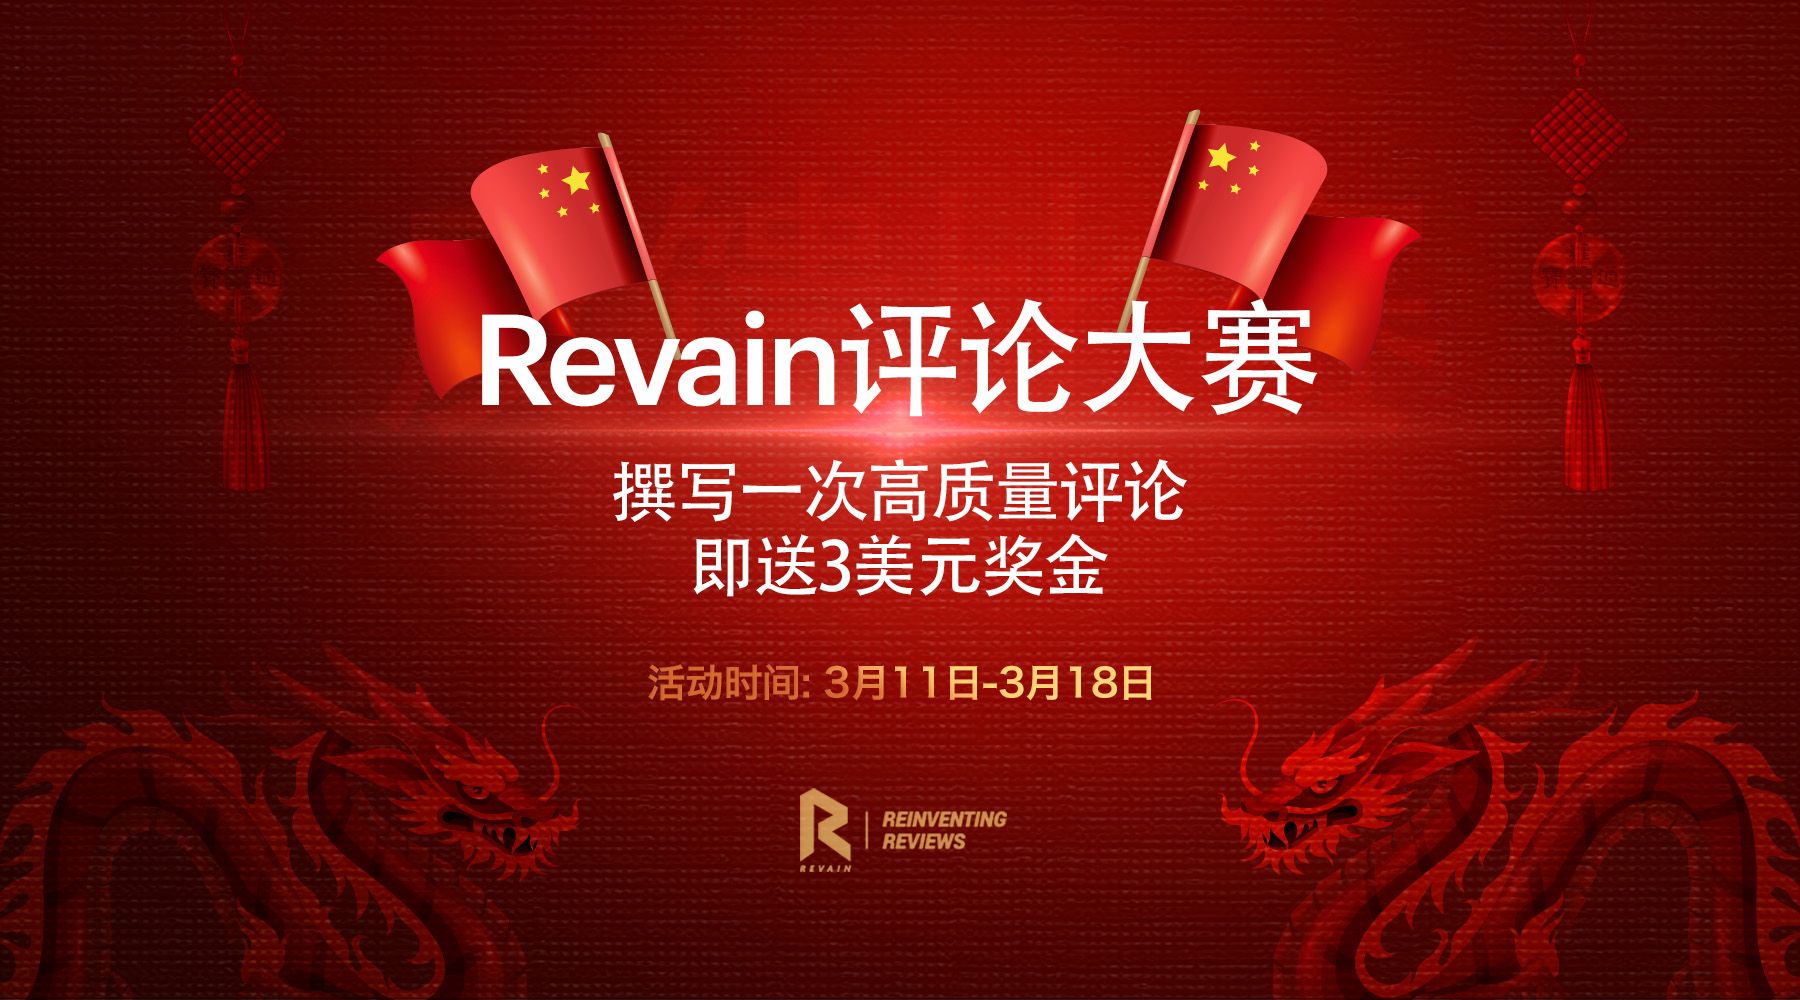 Revain中文评论大赛火热进行中，撰写一条高质量评论即送3美元奖金，多写多送！